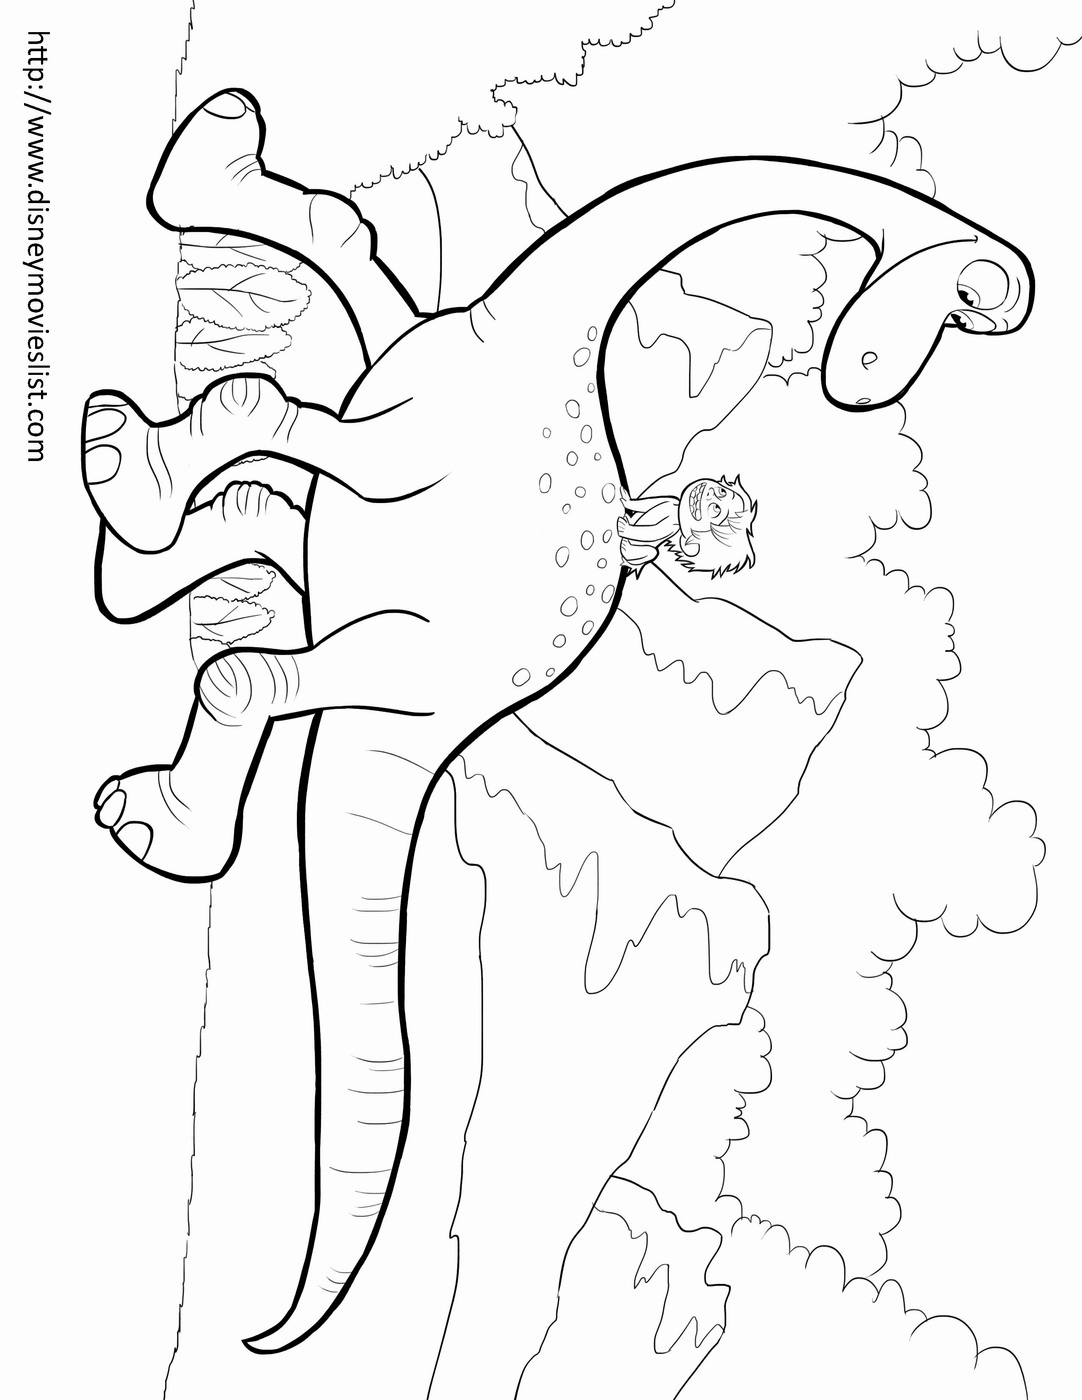 Харошийдинозаврраскрашка